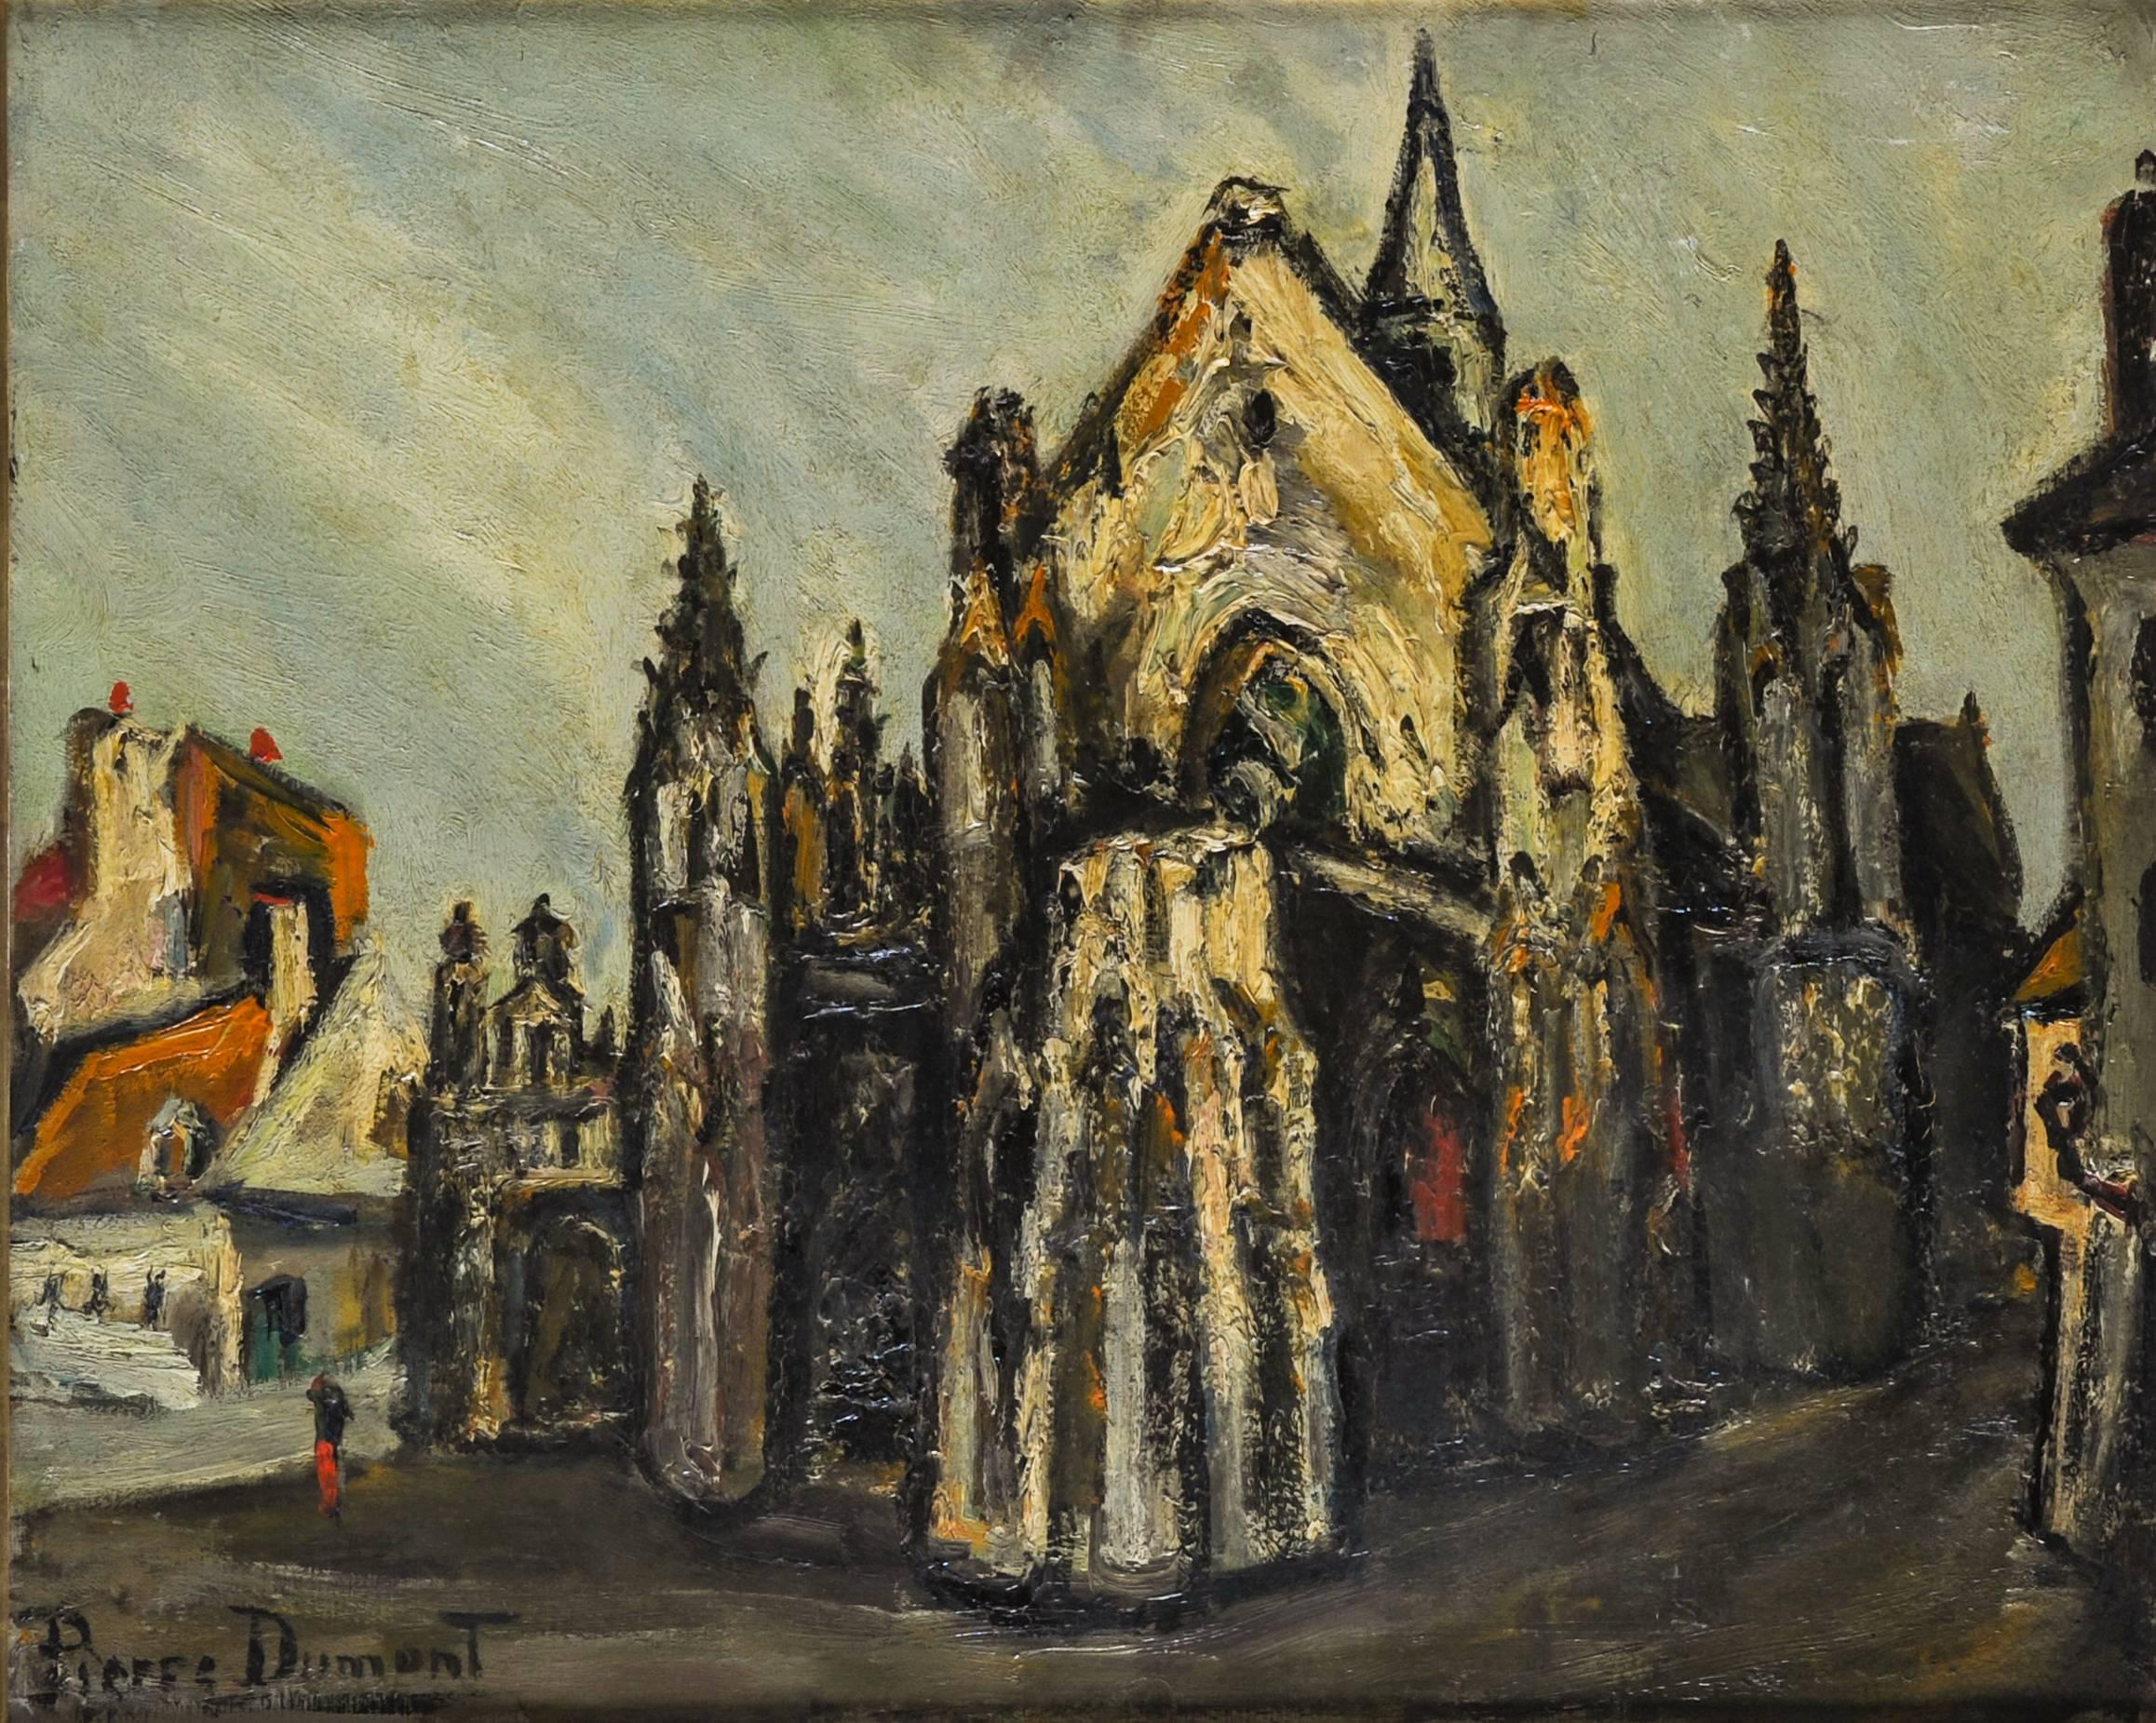 Pierre DuMont Landscape Painting - Pierre Dumont "Cathedral" 1910-1919 Oil on Canvas Fauvisme École de Rouen